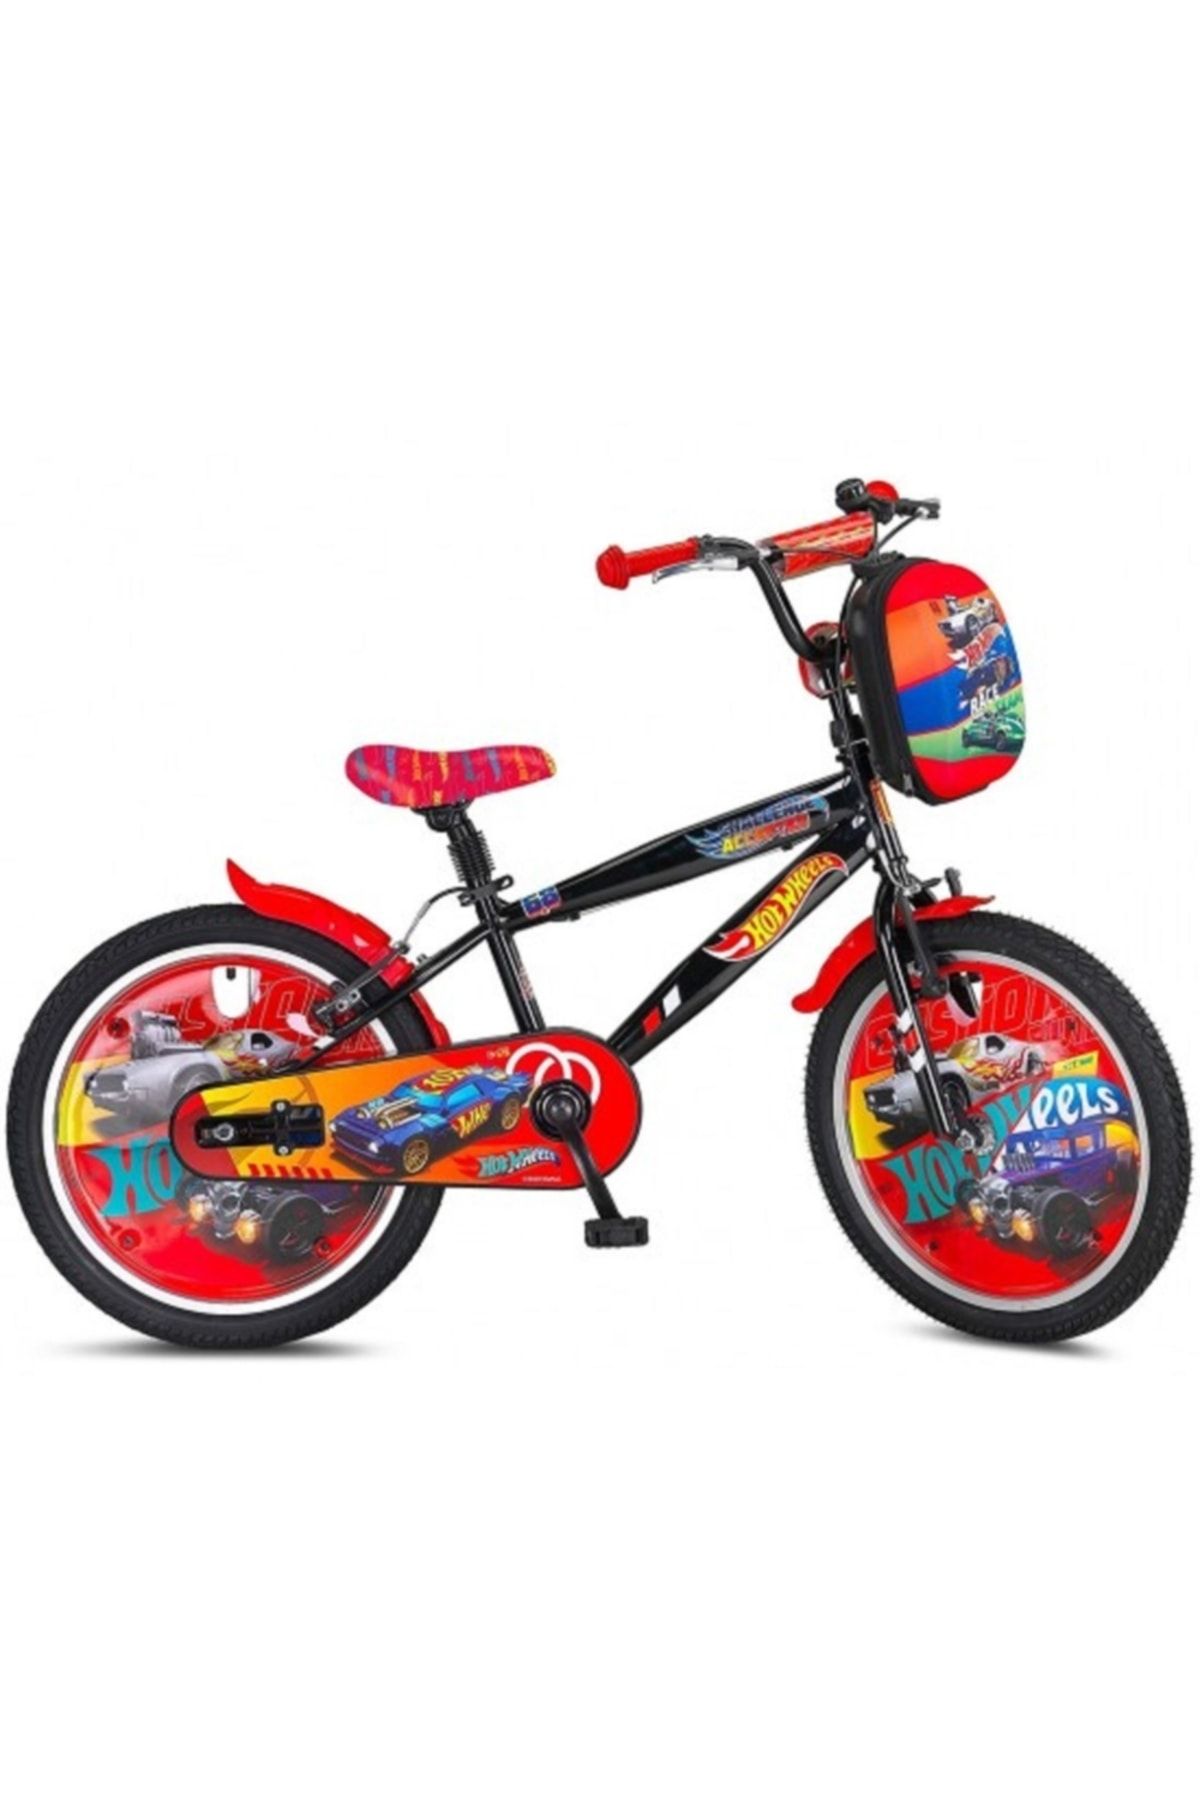 Ümit 2042 Hot 20 Jant Çocuk Bisikleti - Siyah-kırmızı